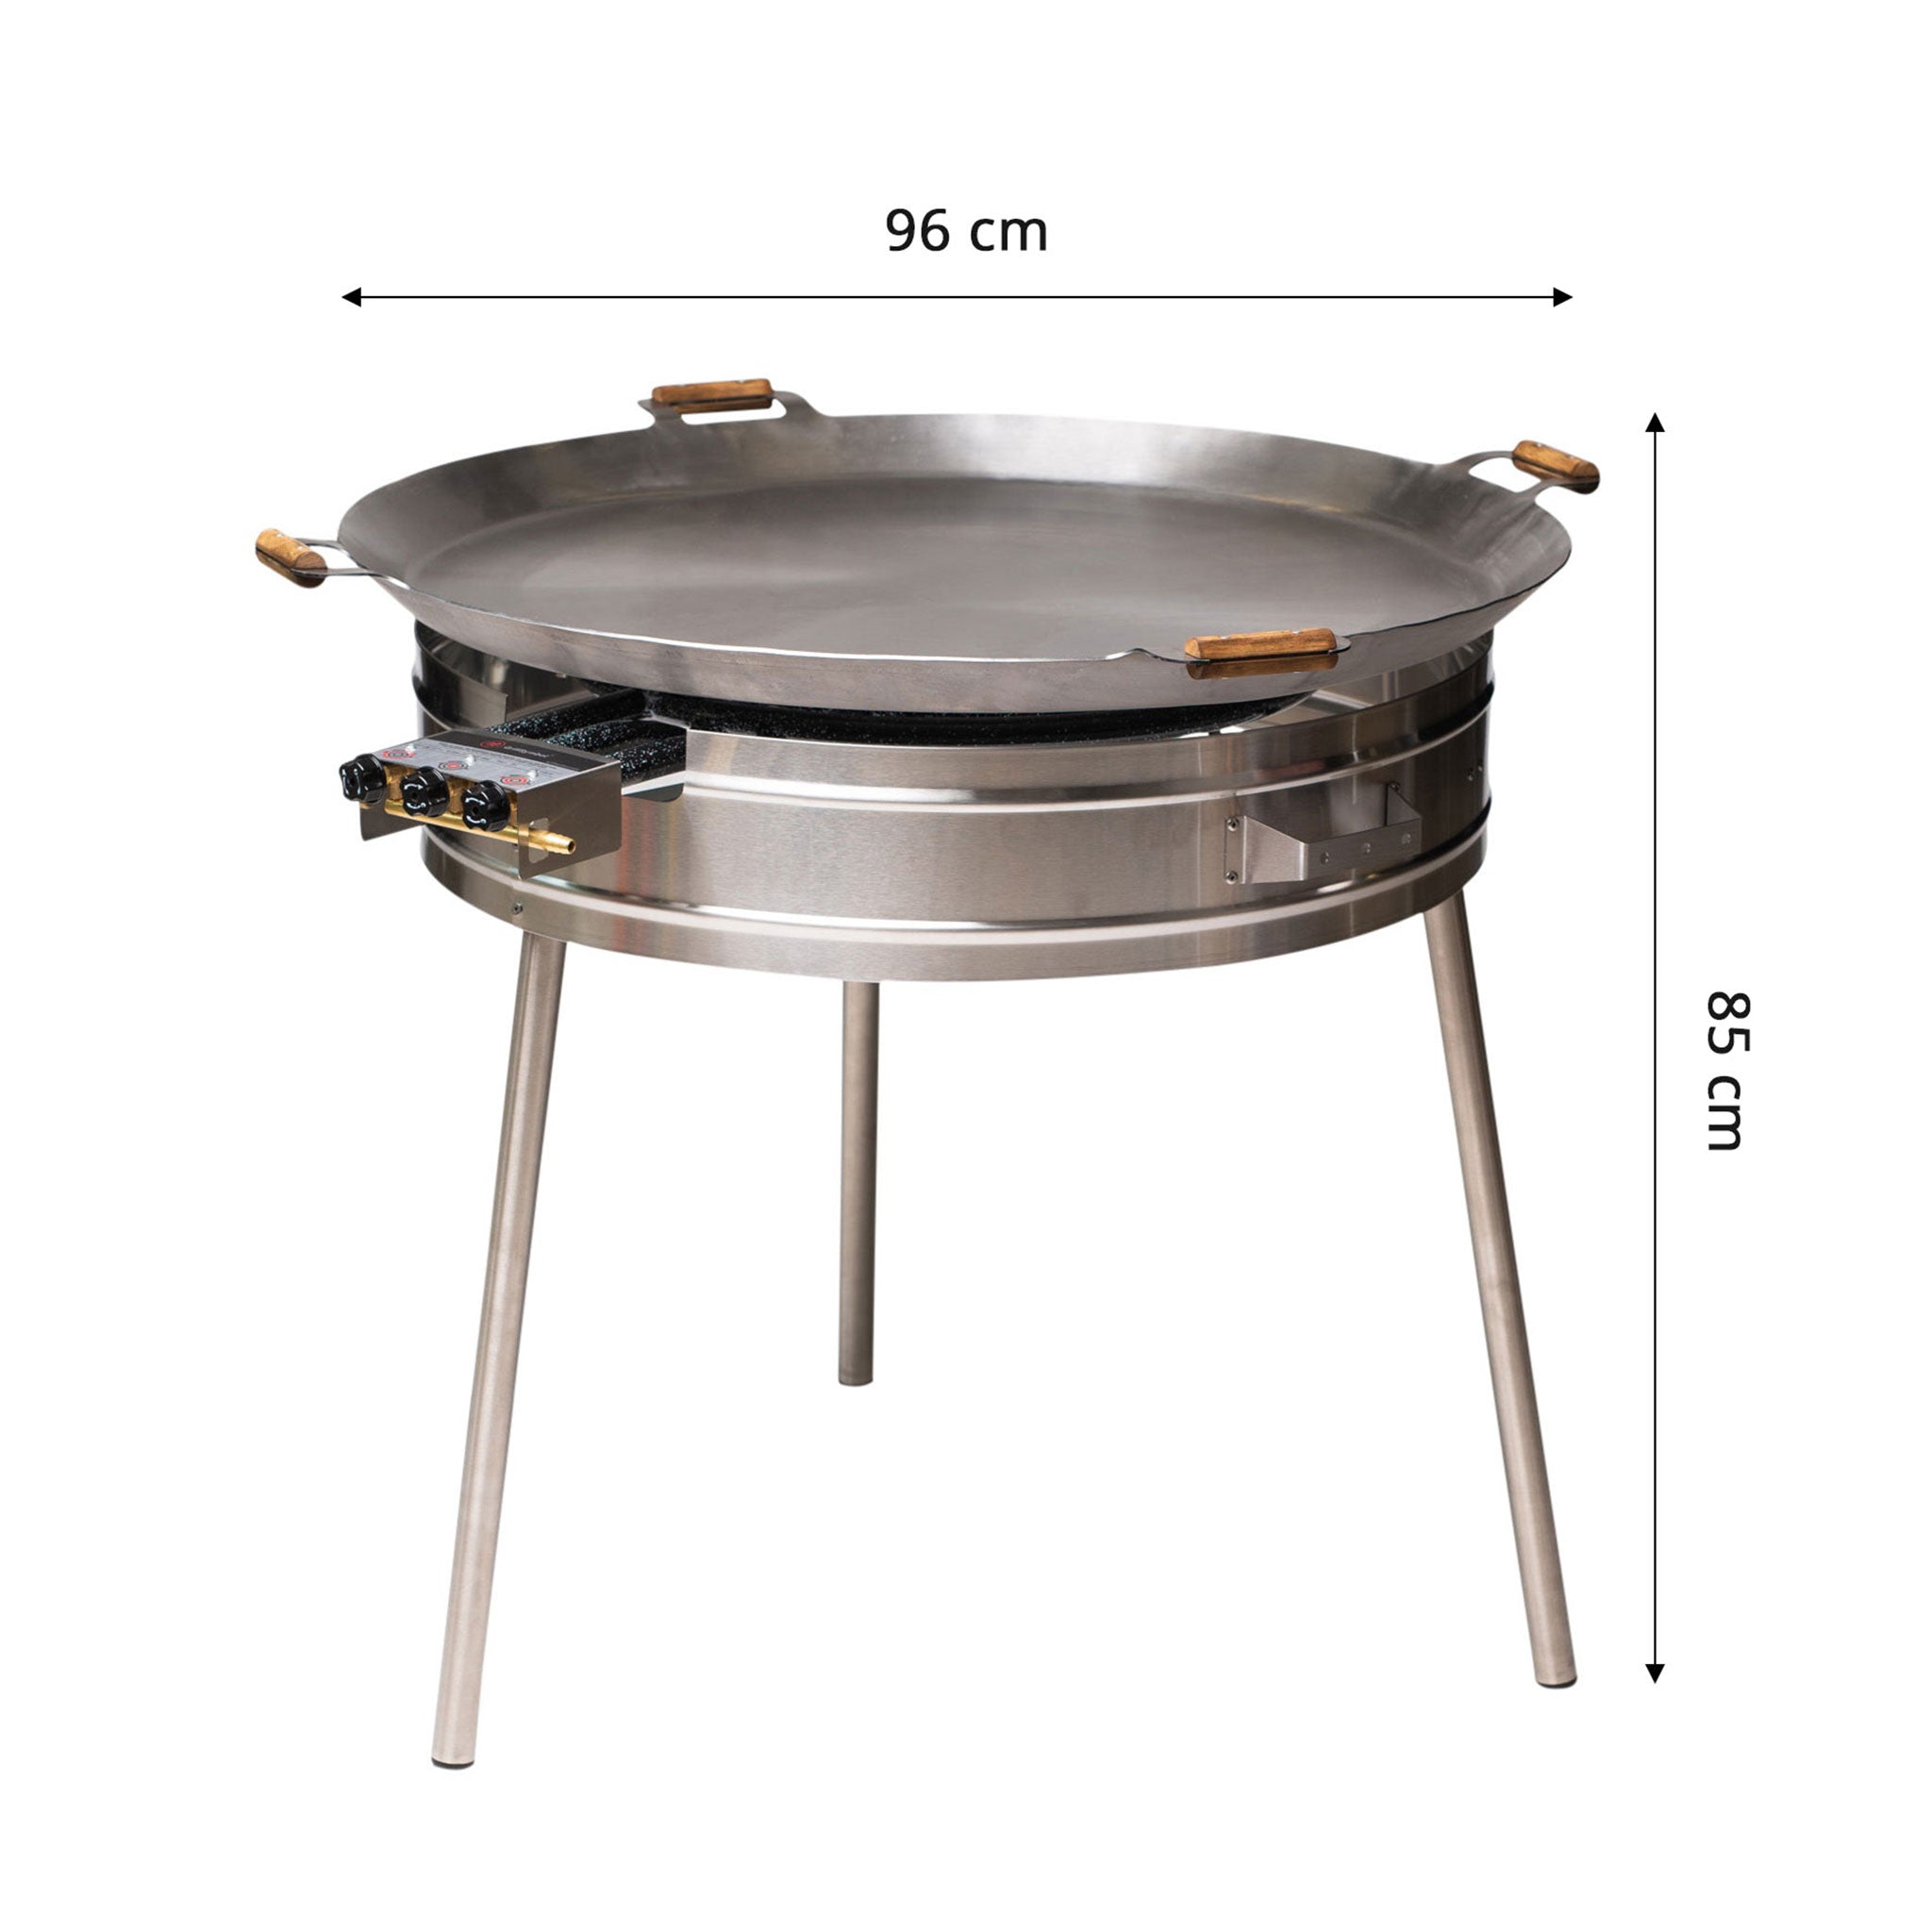 GrillSymbol Paella Cooking Set Basic-960, ø 96 cm
(pan 3 mm steel ø 96 cm, gas burner ø 70 cm)